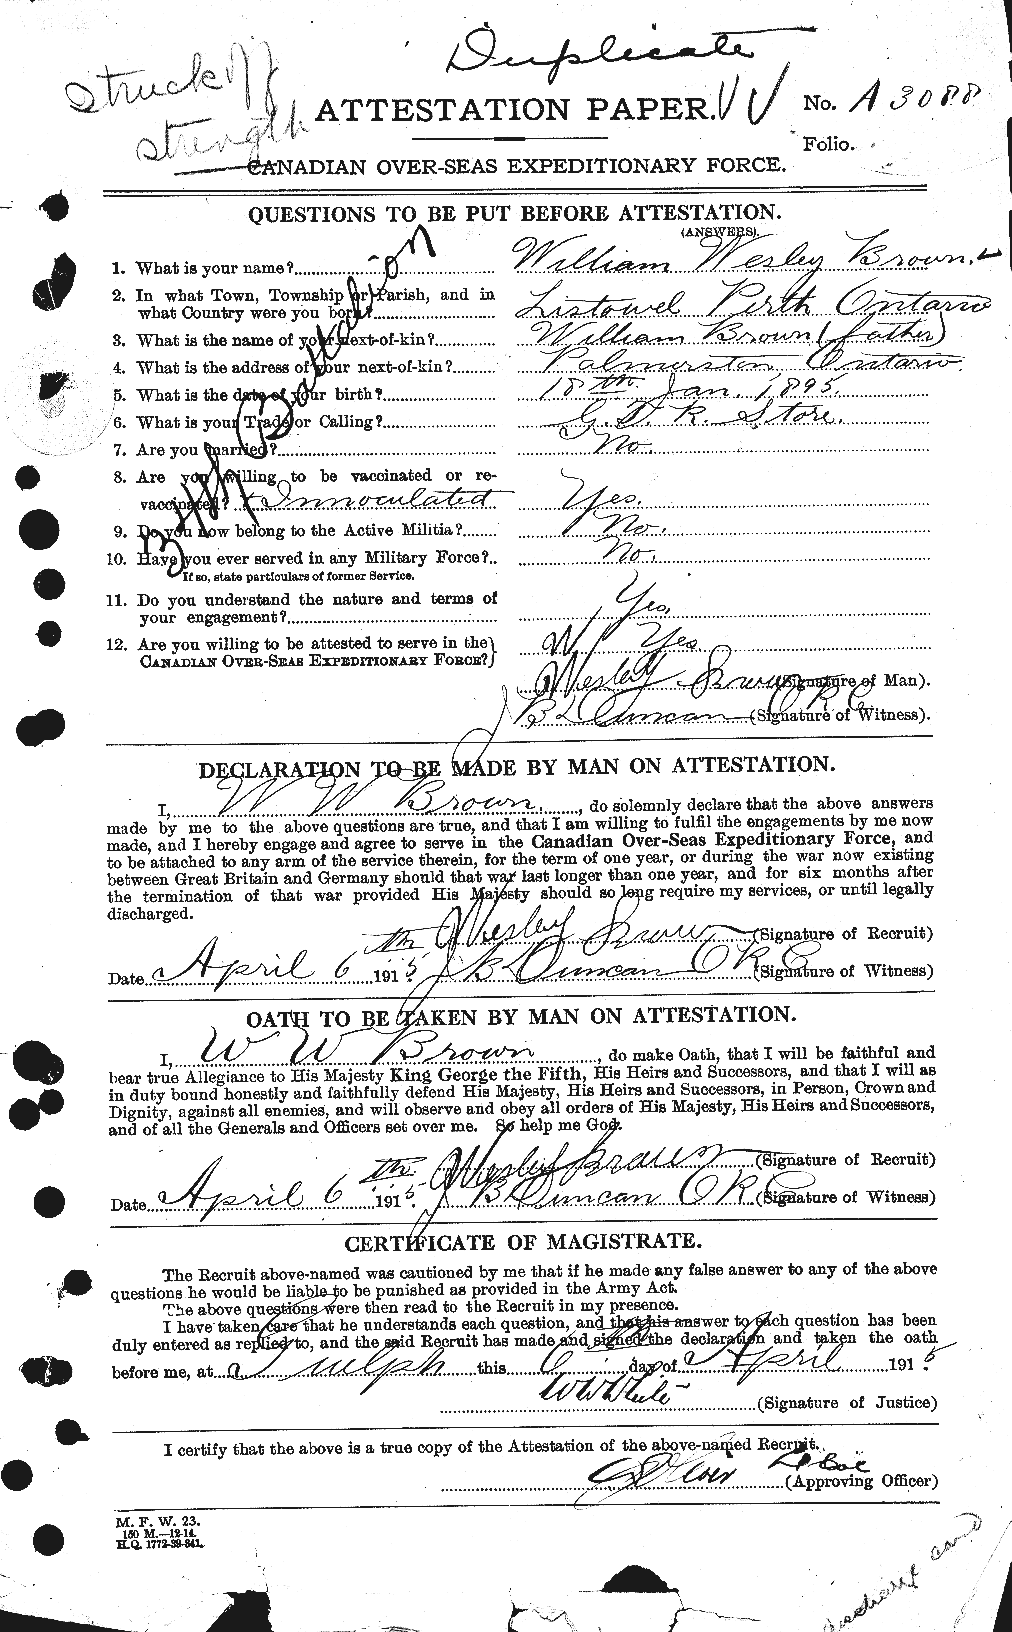 Dossiers du Personnel de la Première Guerre mondiale - CEC 270903a